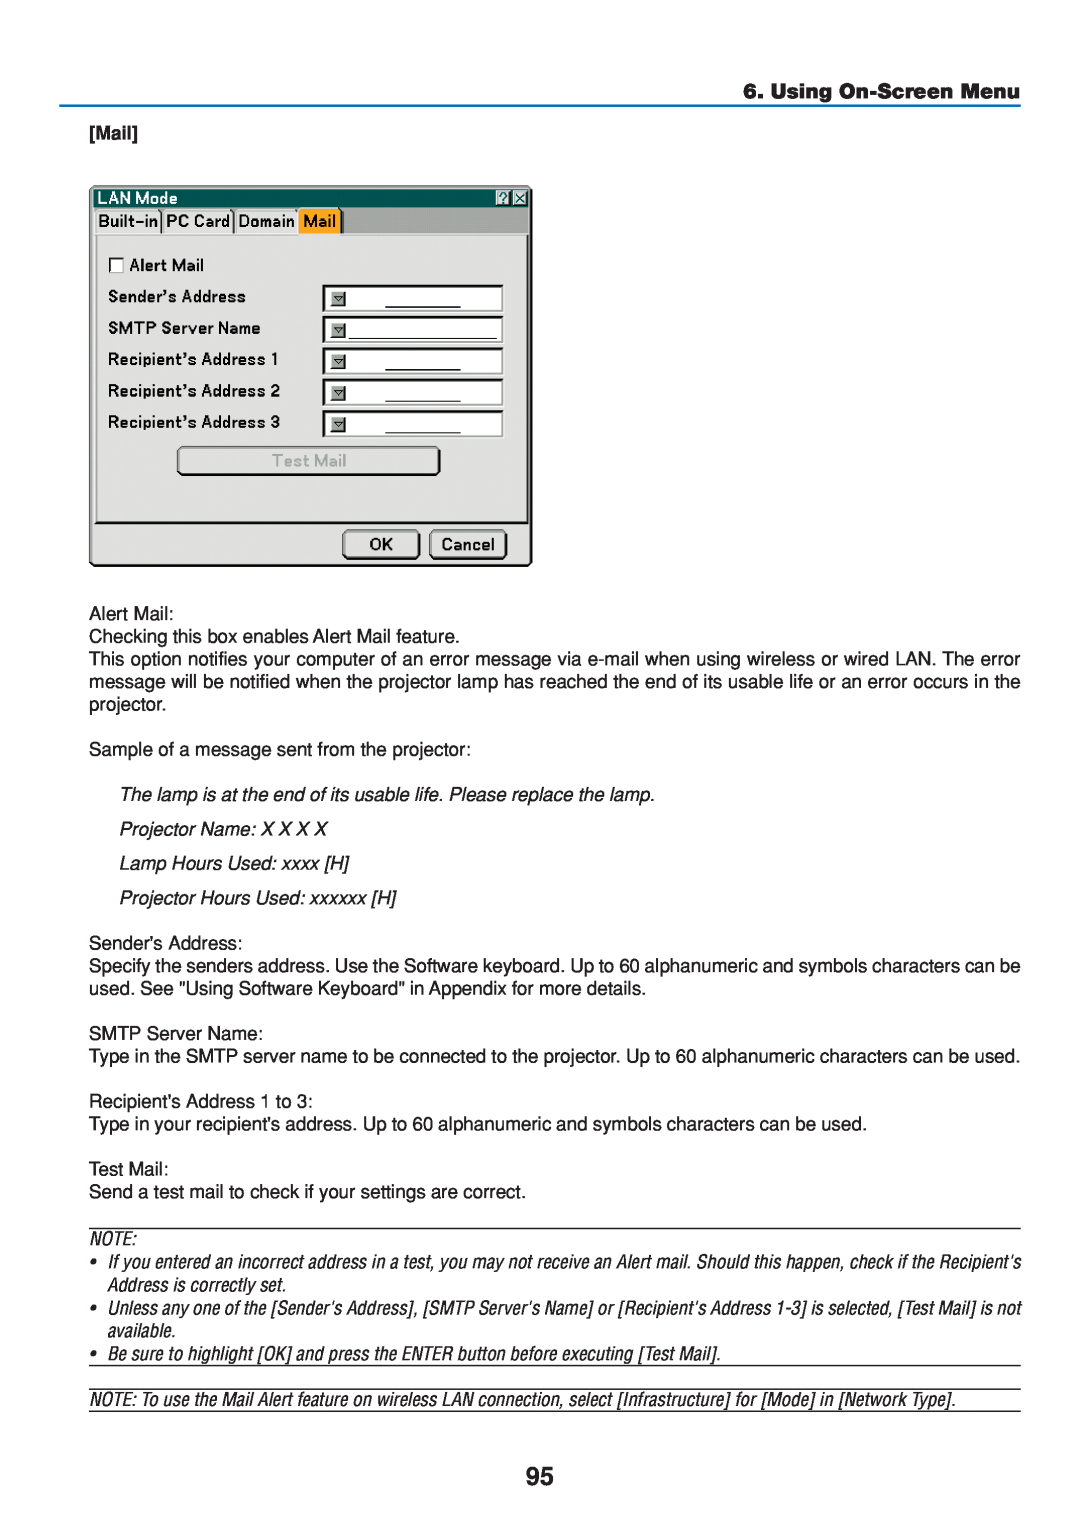 Dukane 8808 user manual Using On-Screen Menu, Mail 